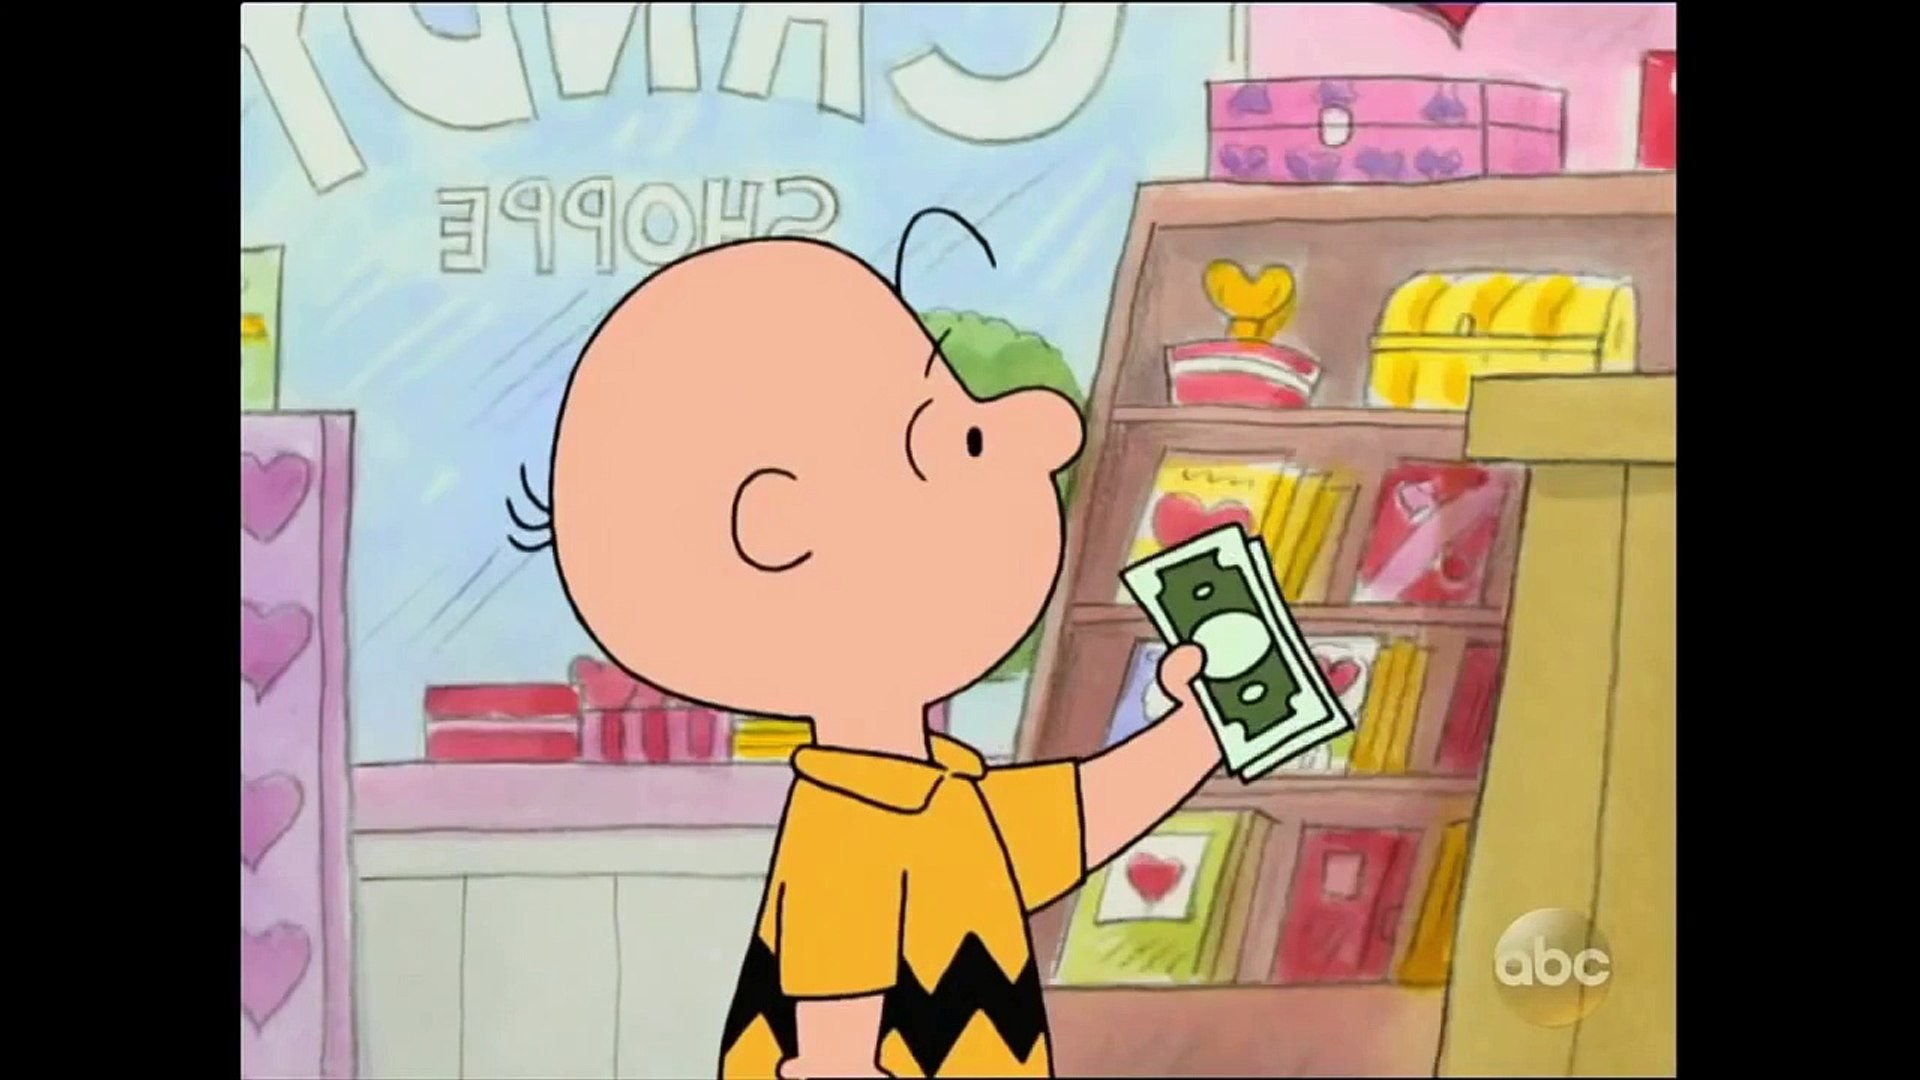 1920x1080 A Charlie Brown Valentine (2002) - Animation, Comedy, Family Movies - VidÃ©o  dailymotion